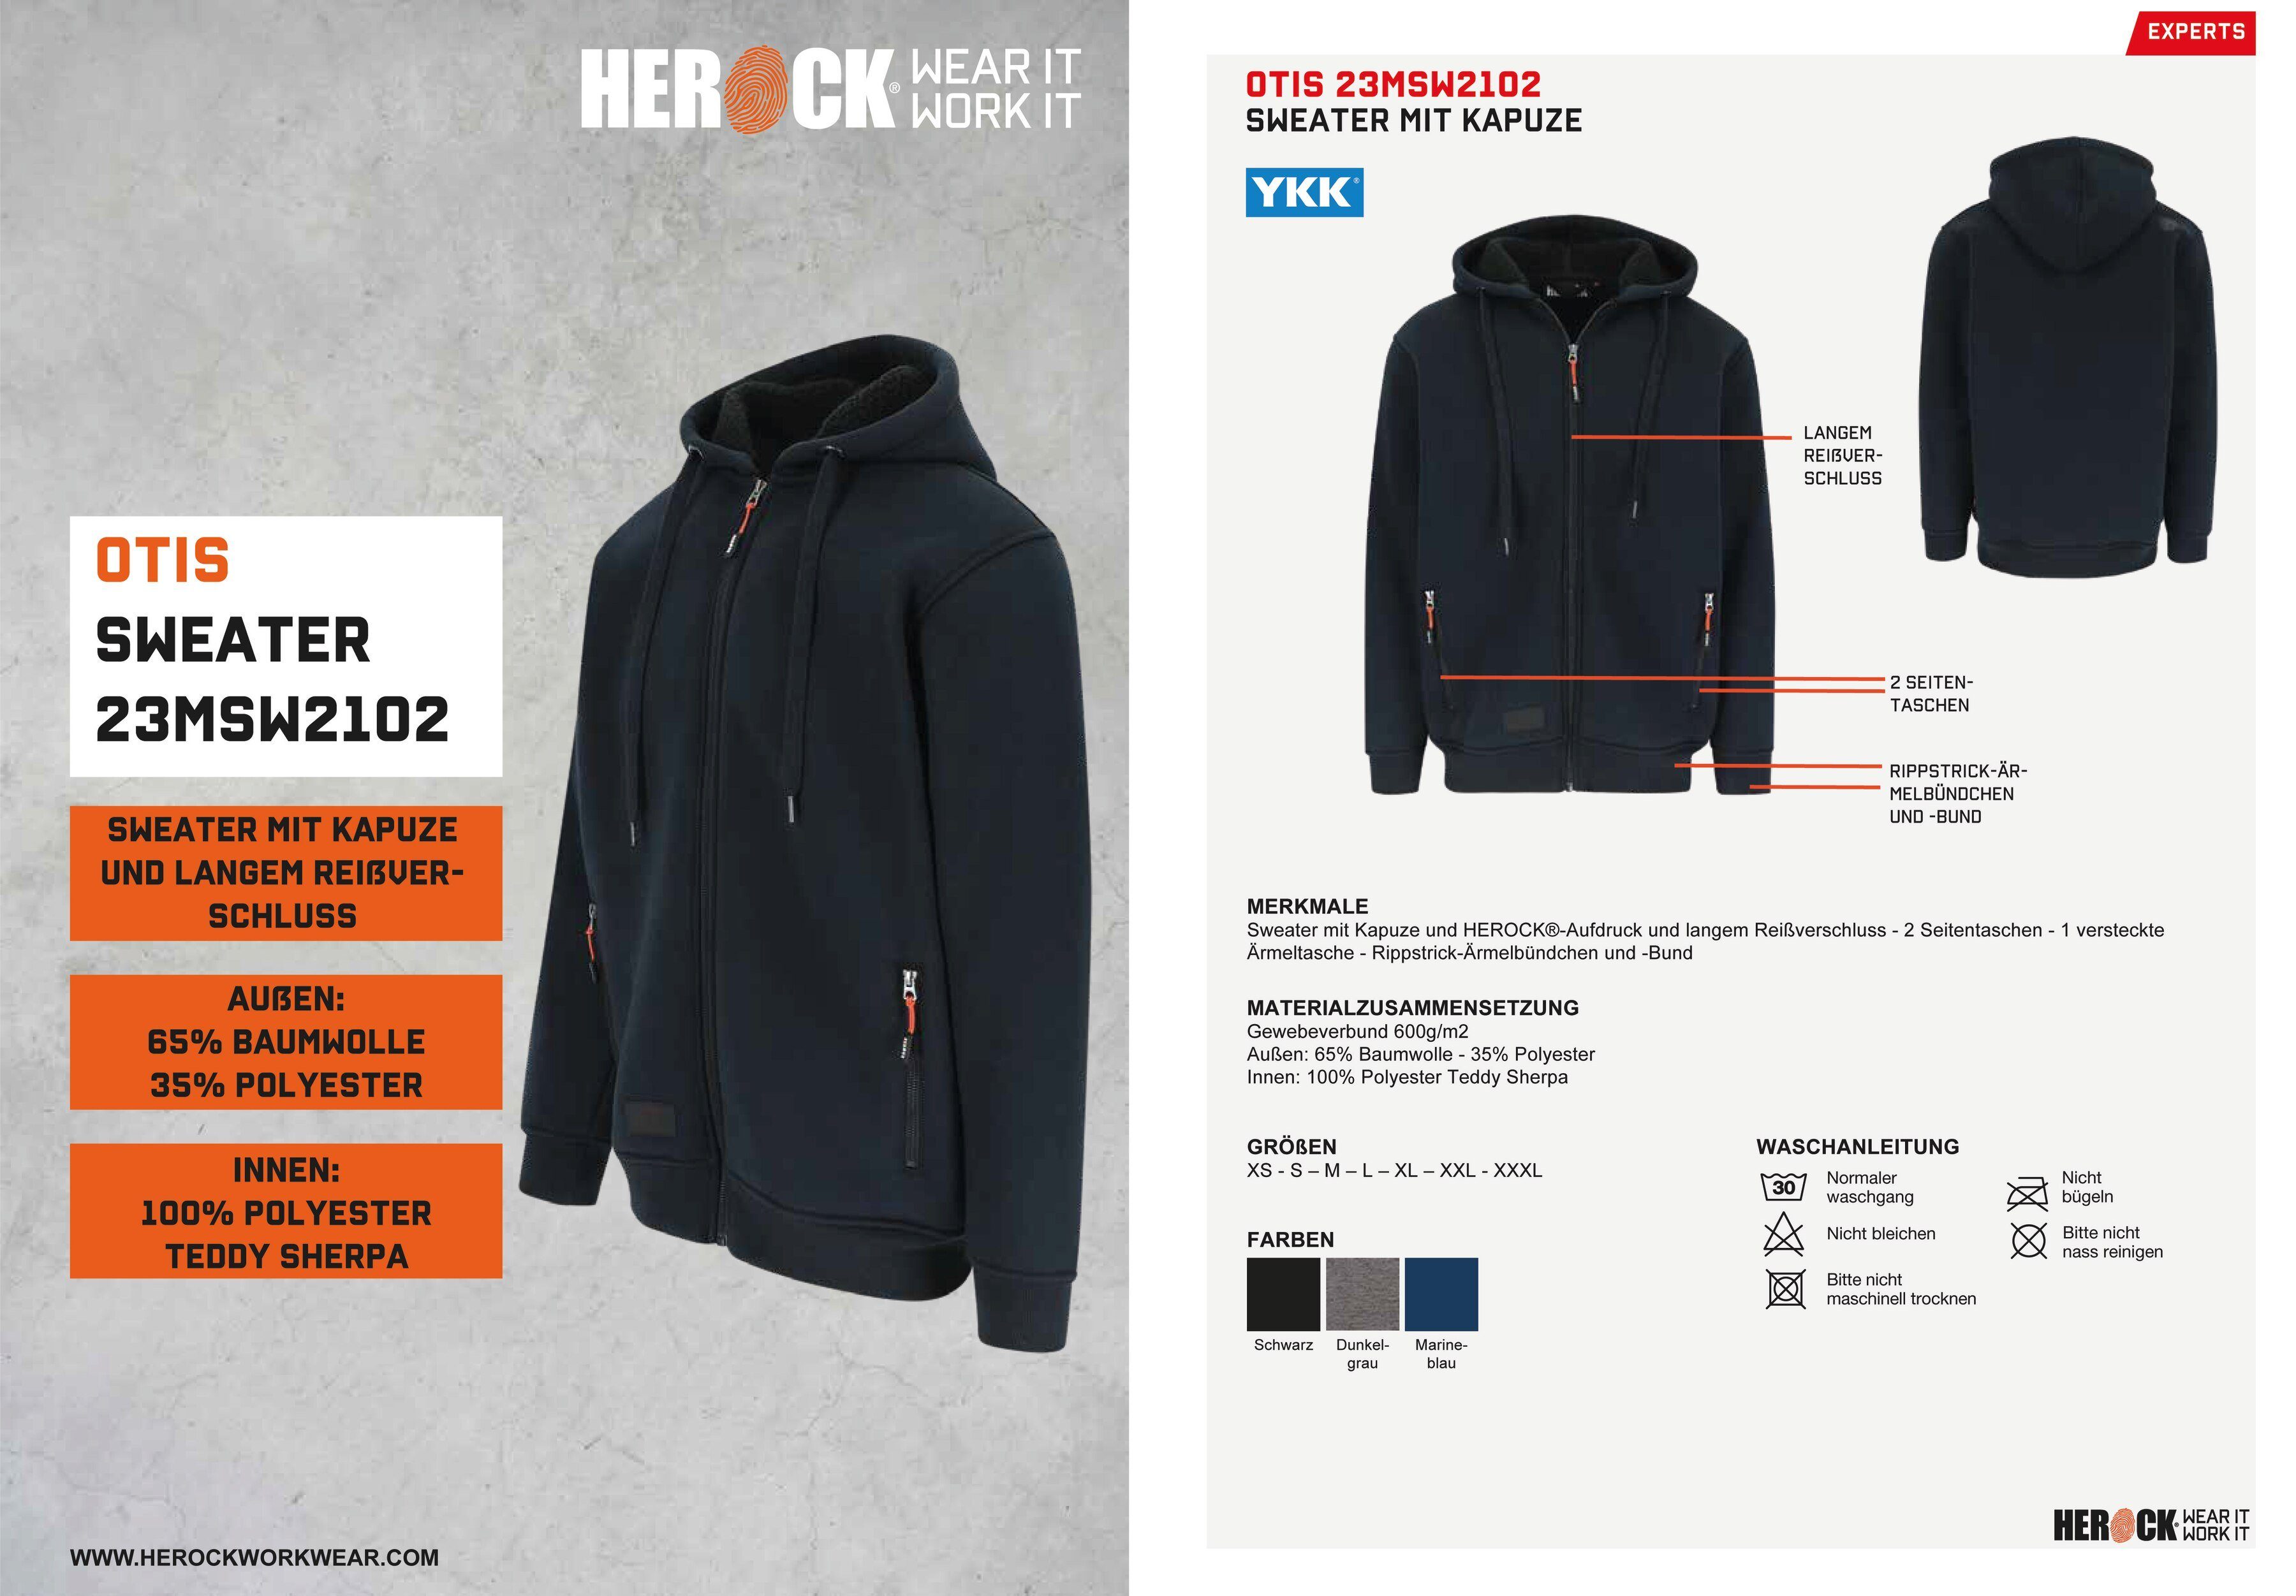 Herock Sweater OTIS marine angenehm Mit und Kapuze, warm Reißverschluβ, langem HEROCK®-Aufdruck